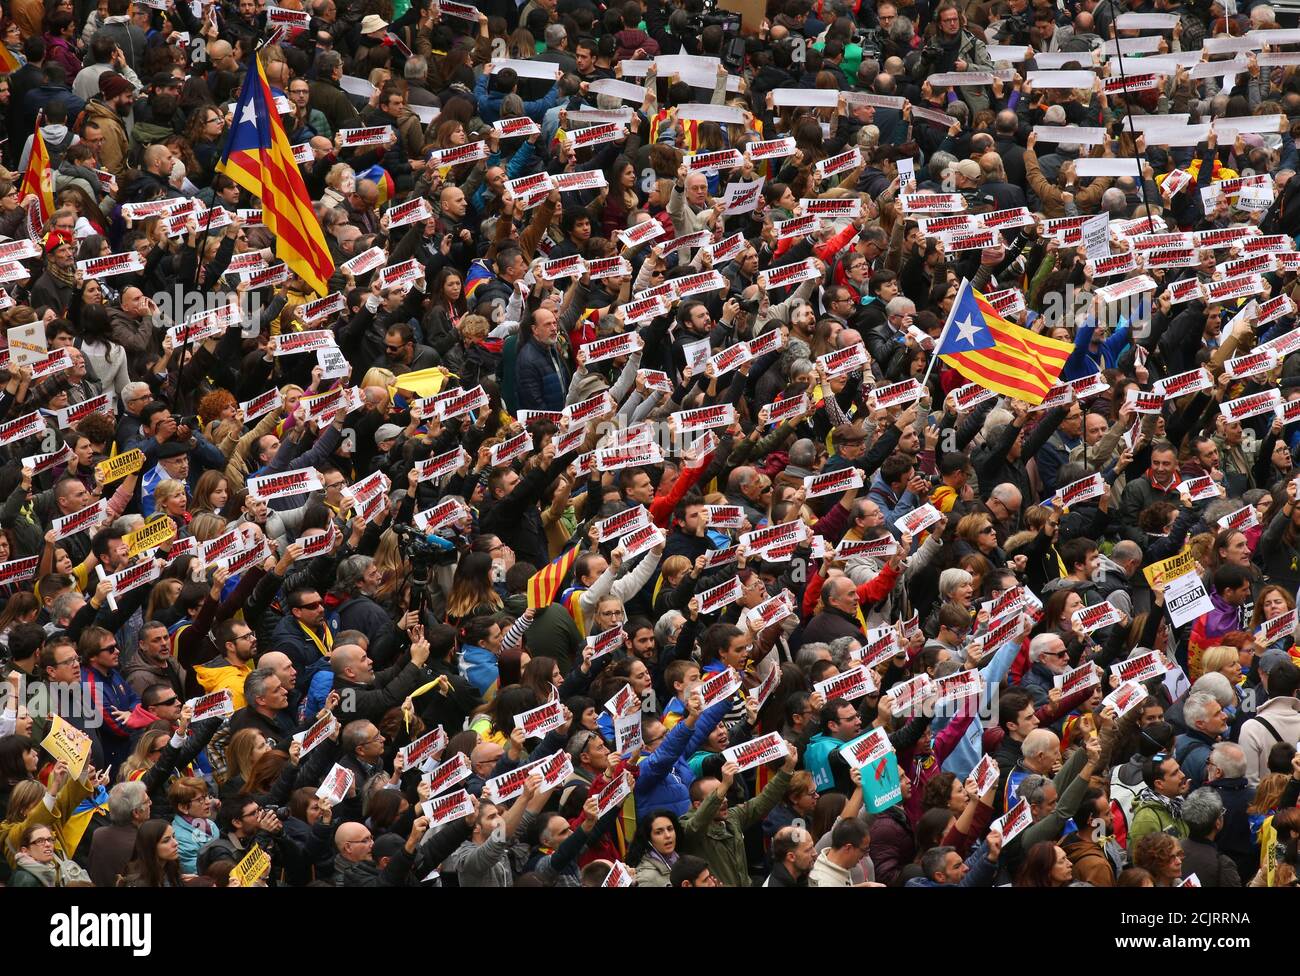 Los manifestantes sostienen pancartas que leen "Libertad presos Políticos, somos República" mientras se reúnen en la plaza Sant Jaume en una manifestación durante una huelga regional parcial en Barcelona, España, el 8 de noviembre de 2017. REUTERS/Albert Gea Foto de stock